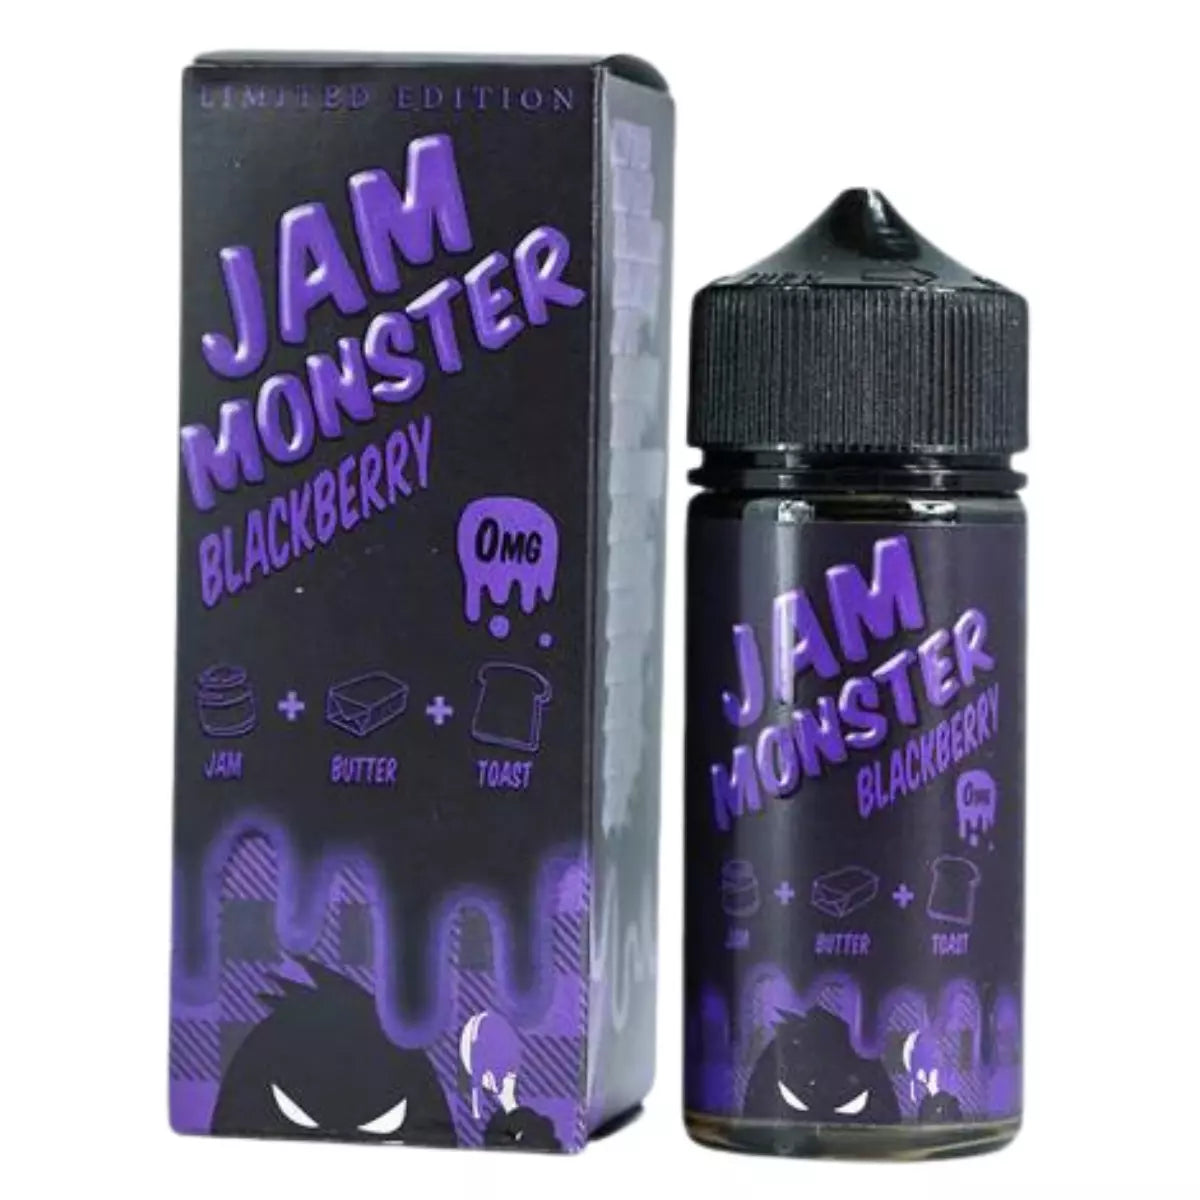 Jam Monster Blackberry Limited Edition - 100ml